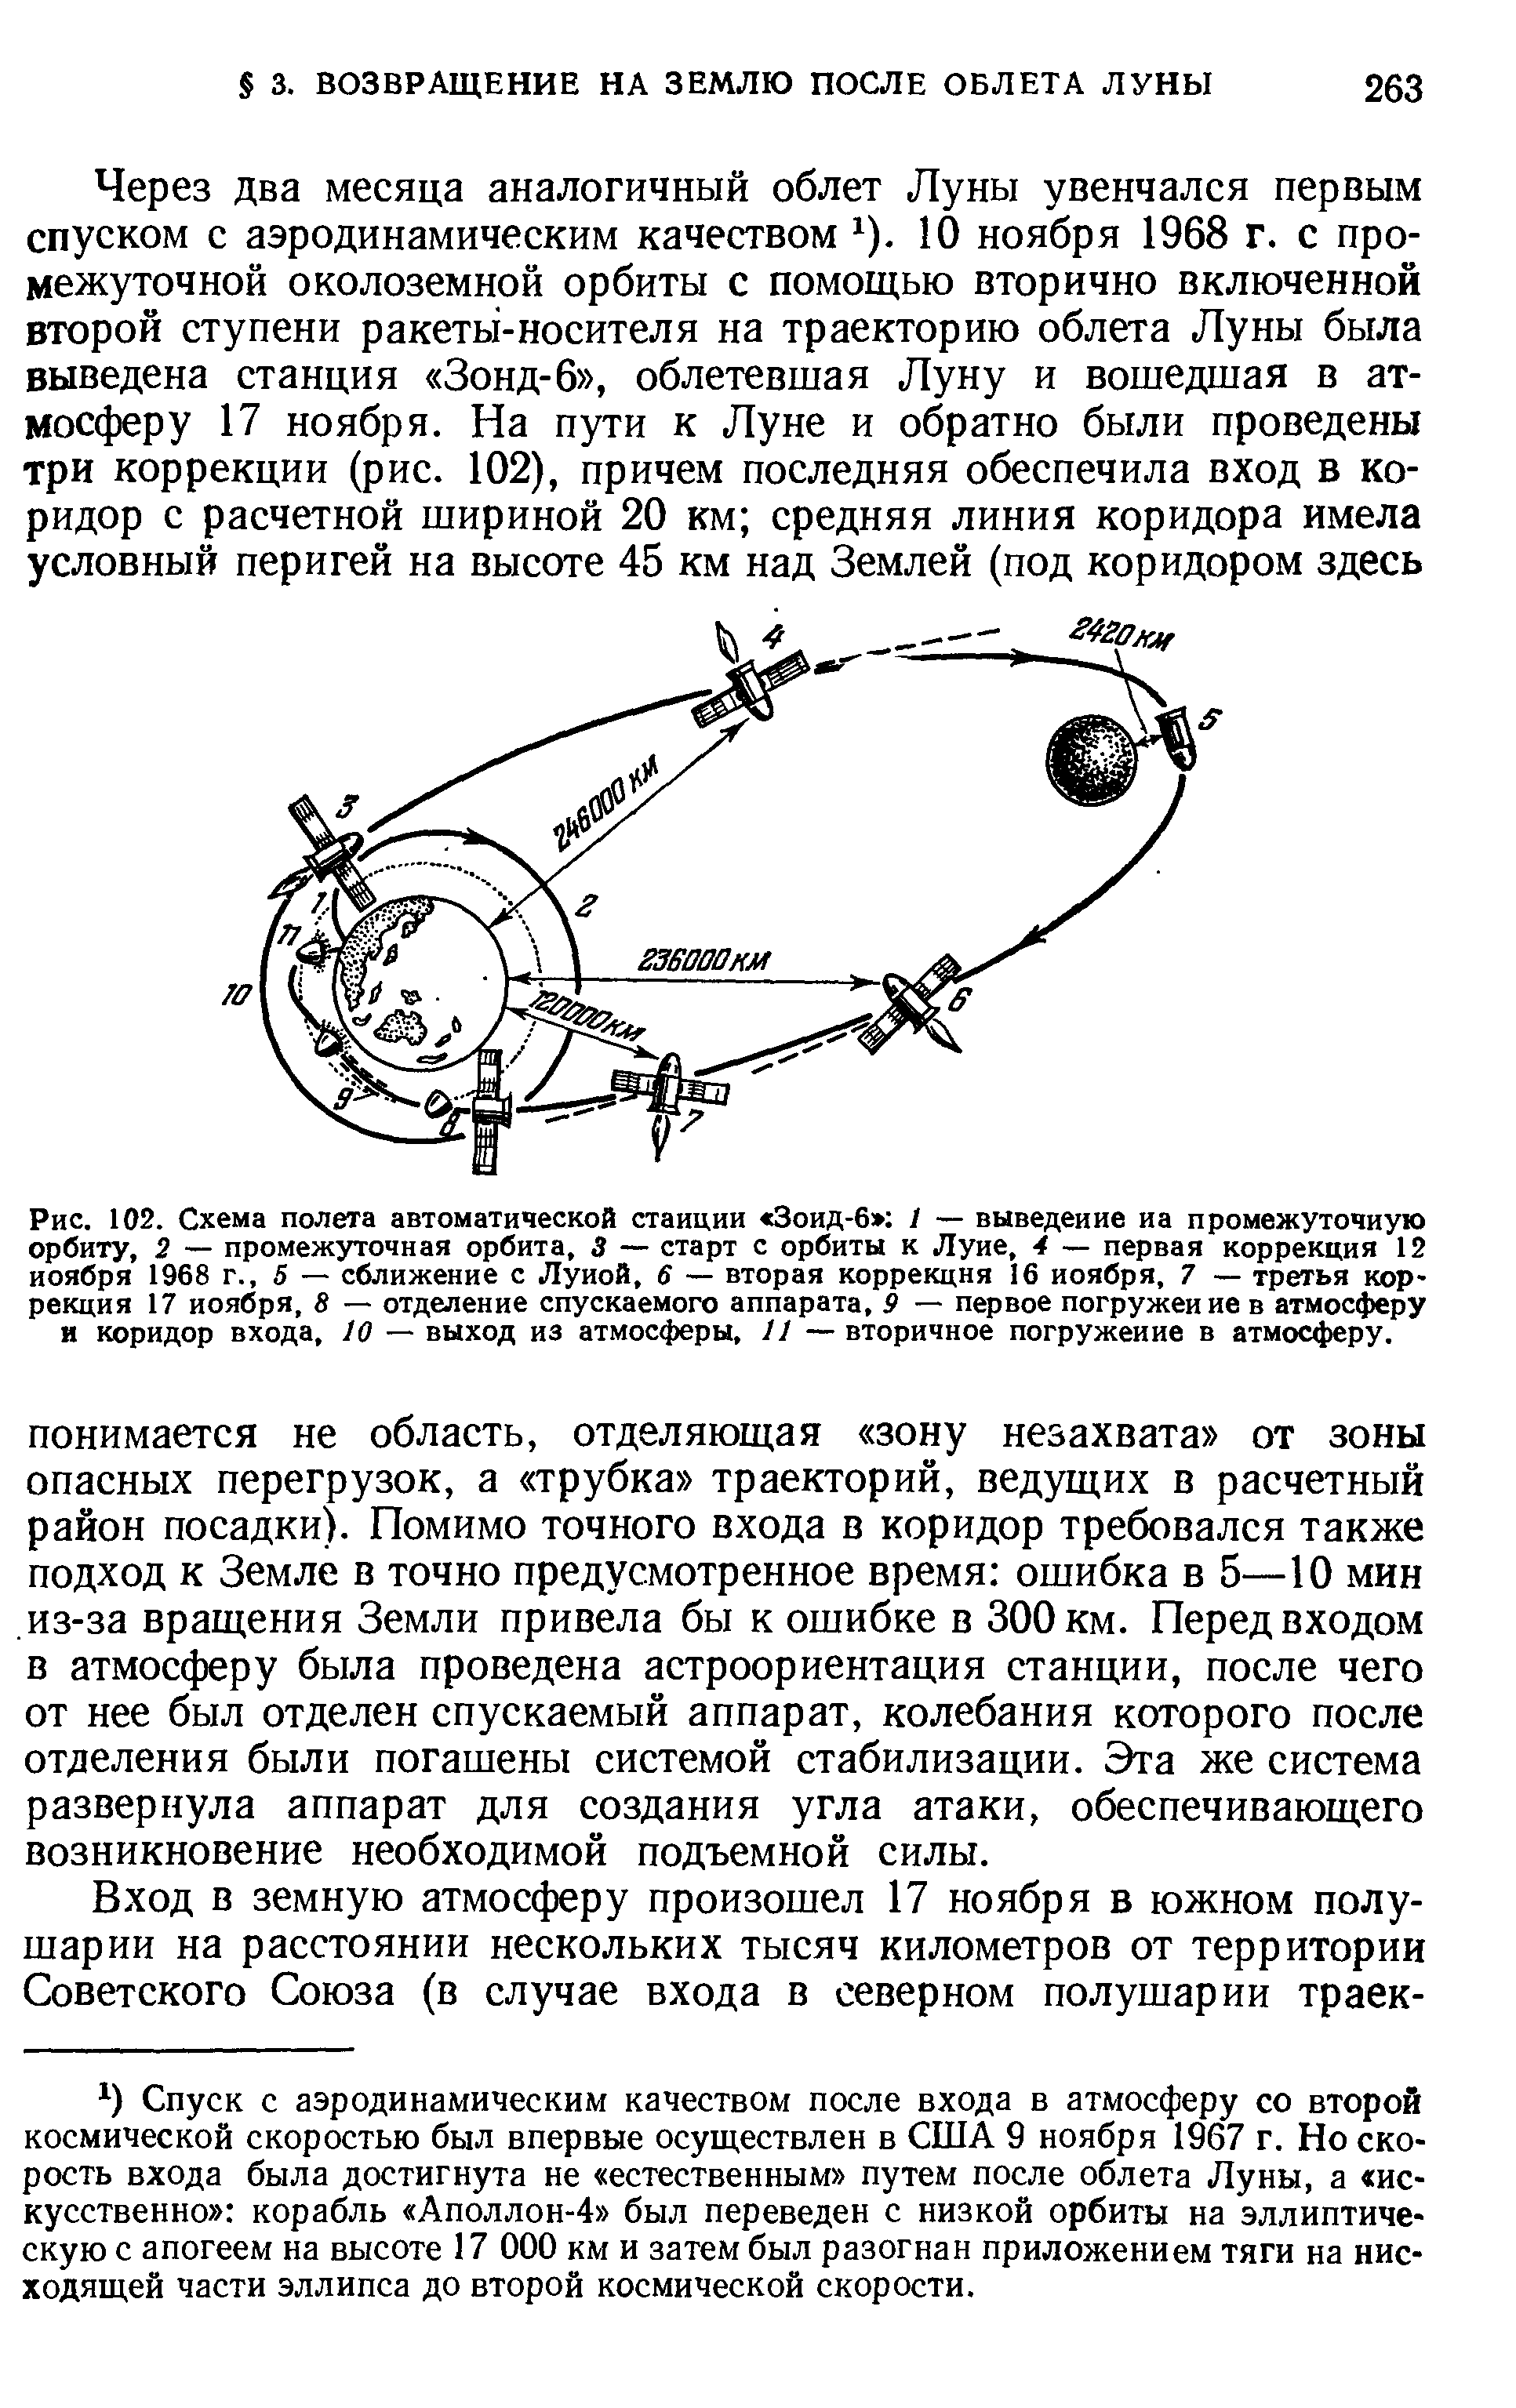 Рис. 102. Схема полета <a href="/info/51164">автоматической станции</a> Зоид-6 / — выведение иа <a href="/info/357779">промежуточную орбиту</a>, 2 — <a href="/info/357779">промежуточная орбита</a>, 3 — старт с орбиты к Луне, 4 — первая коррекция 12 ноября 1968 г., 5 — сближение с Луной, 6 — вторая коррекция 16 ноября, 7 — третья коррекция 17 ноября, 8 — отделение спускаемого аппарата, 9 — первое погружение в атмосферу и <a href="/info/753657">коридор входа</a>, 10 — выход из атмосферы, 11 — вторичное погружение в атмосферу.
